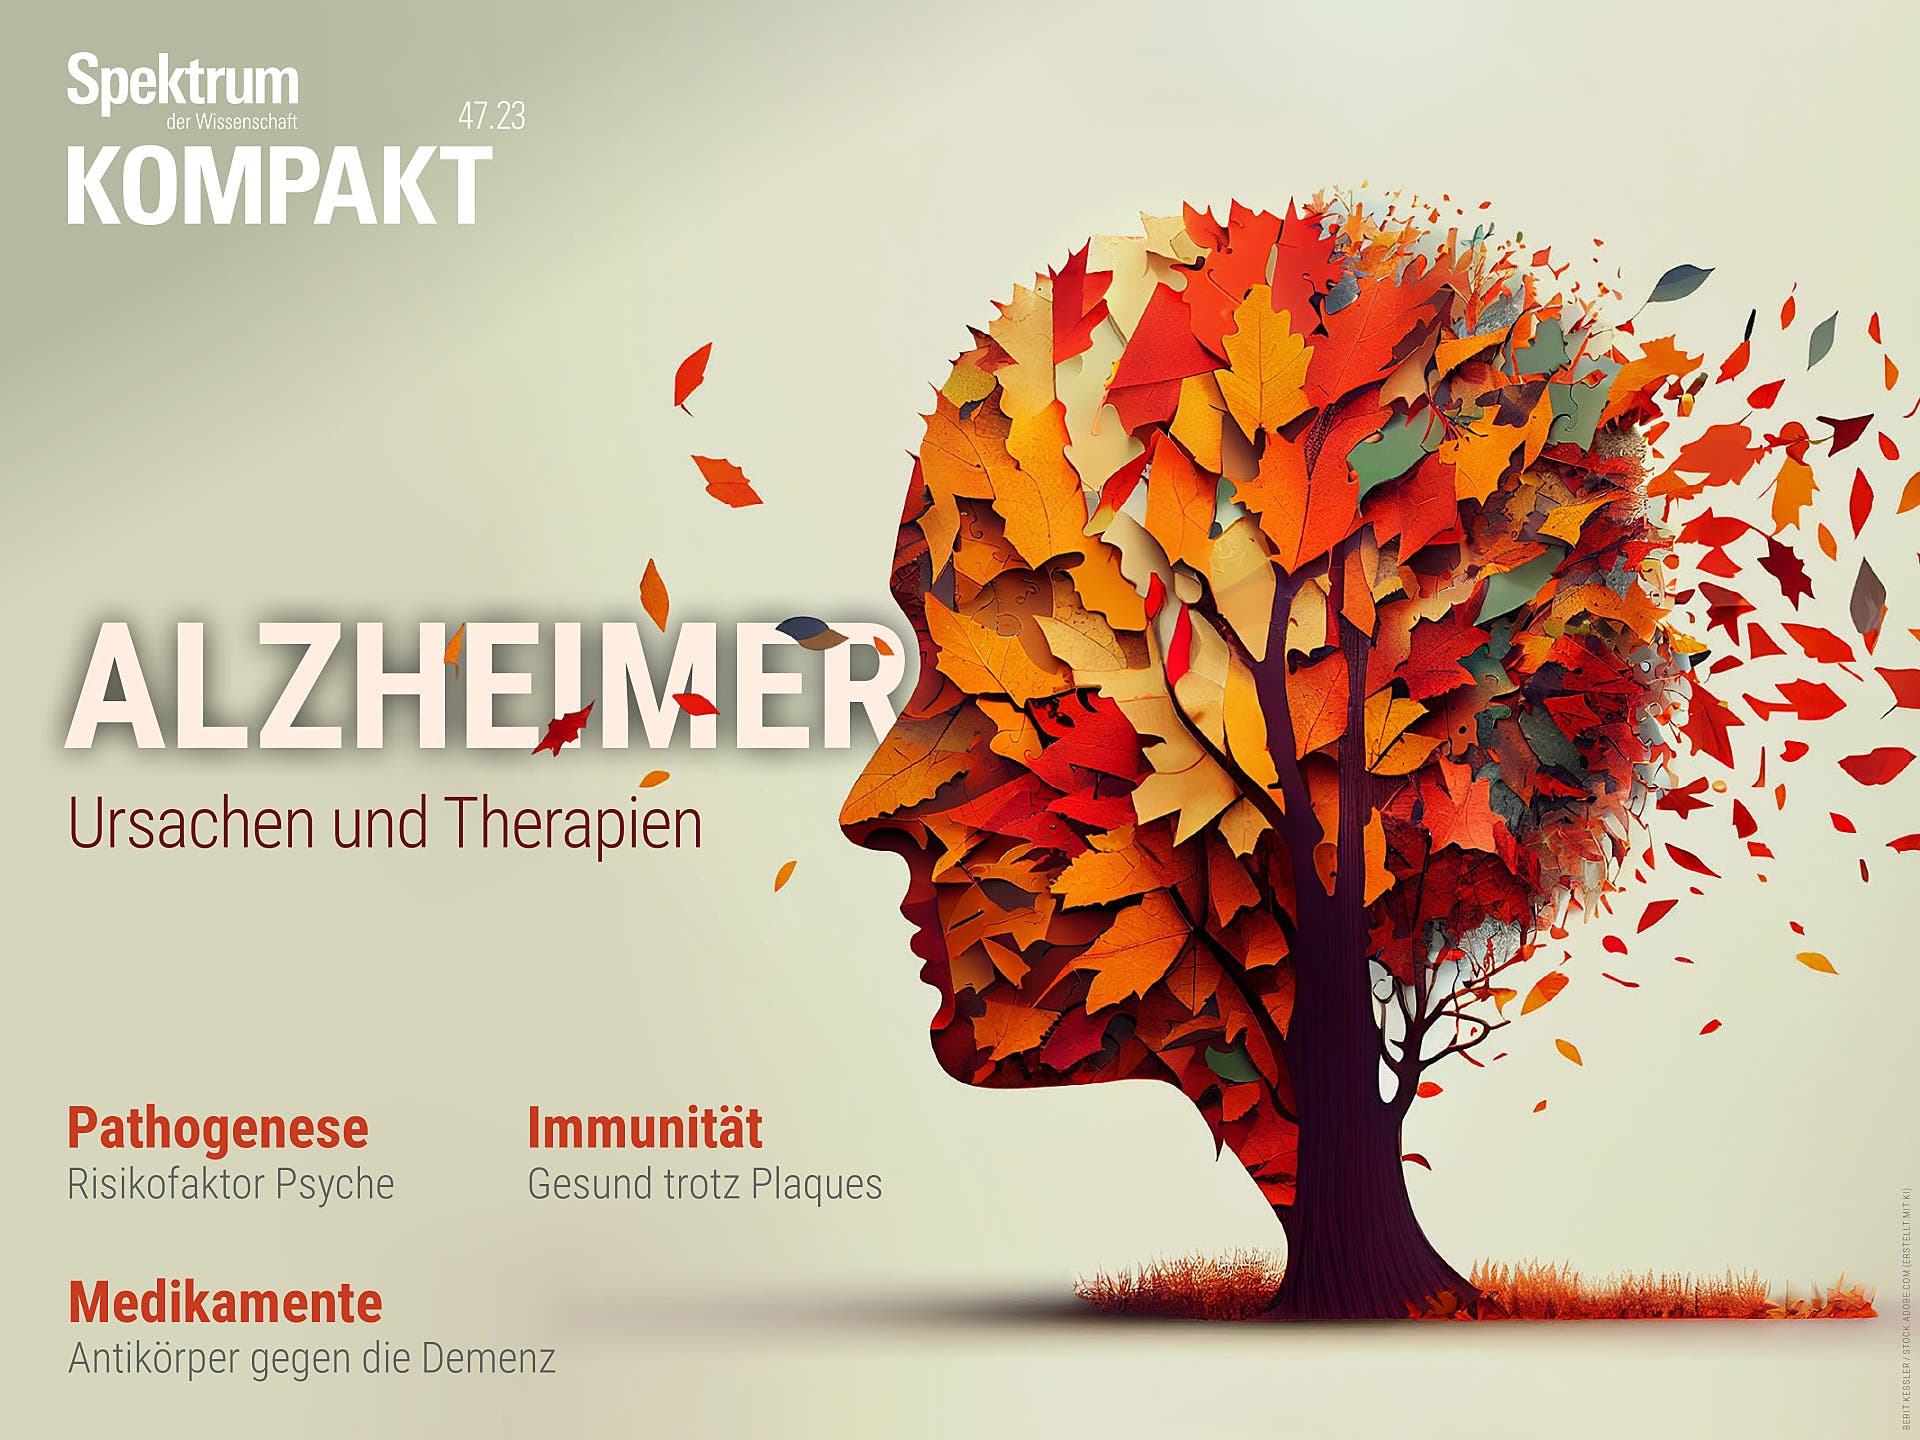 Alzheimer – Ursachen und Therapien